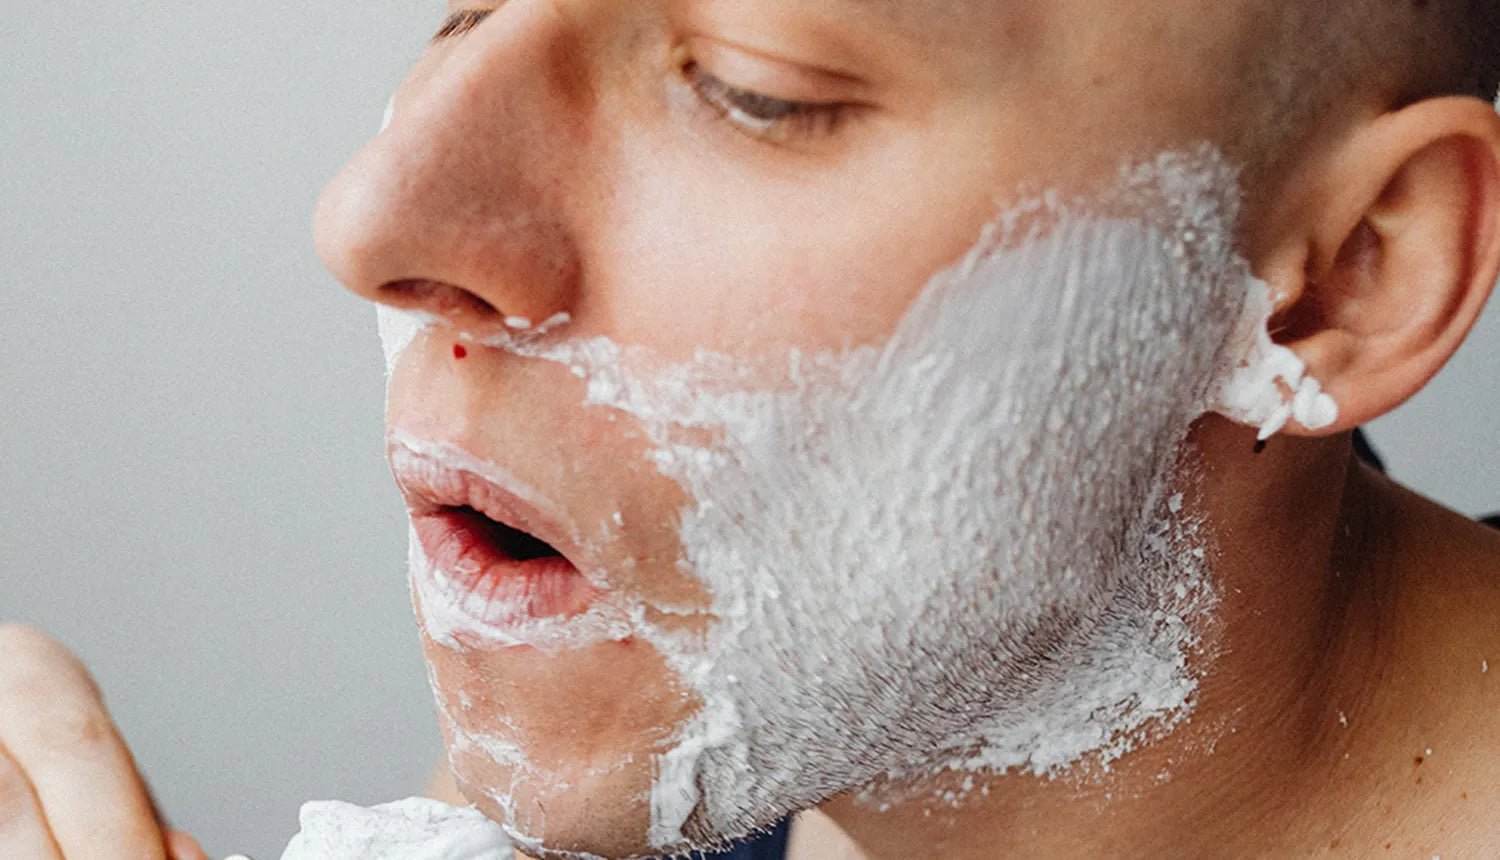 4 erros que os homens cometem na hora de fazer a barba - Dr. JONES. Foto de homem de cabelo raspado e pele clara com creme de barbear e um pequeno corte próximo ao nariz.